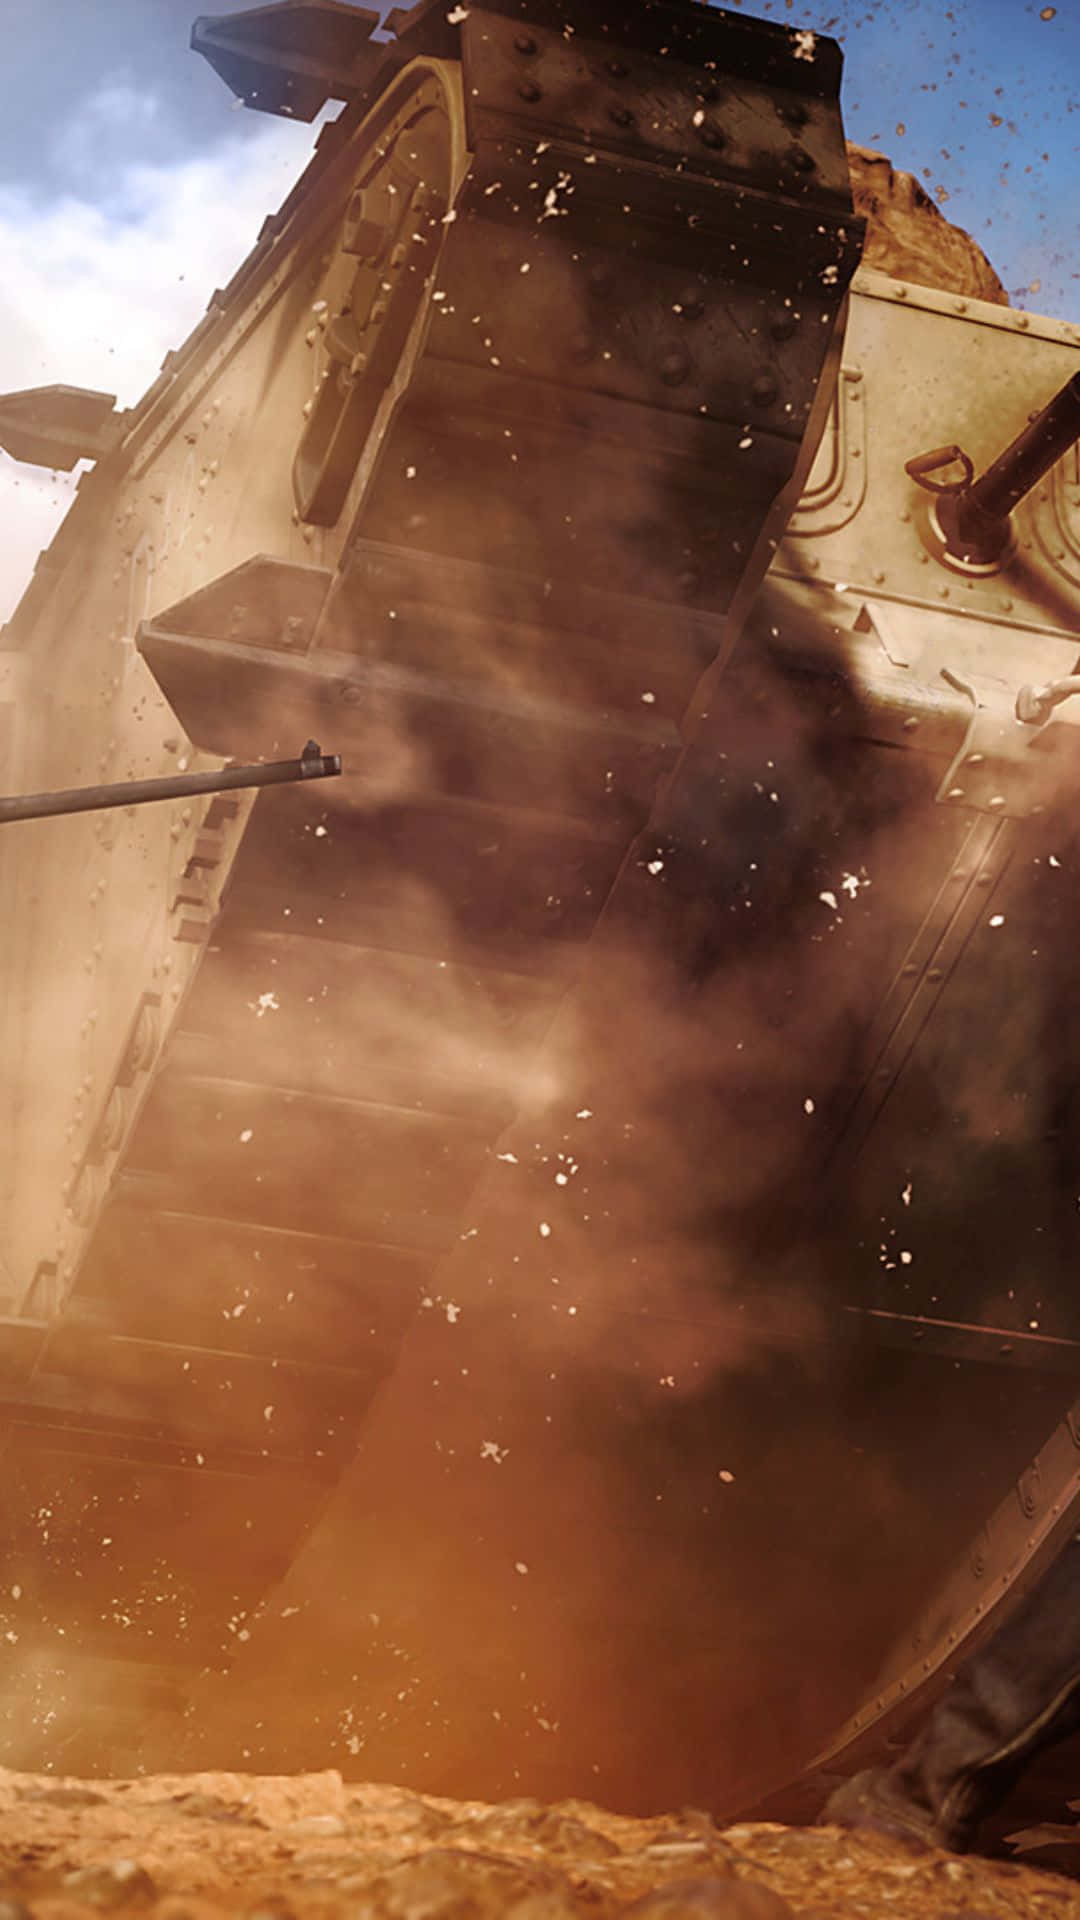 Androidhintergrund Battlefield 1 Rostiger Panzer